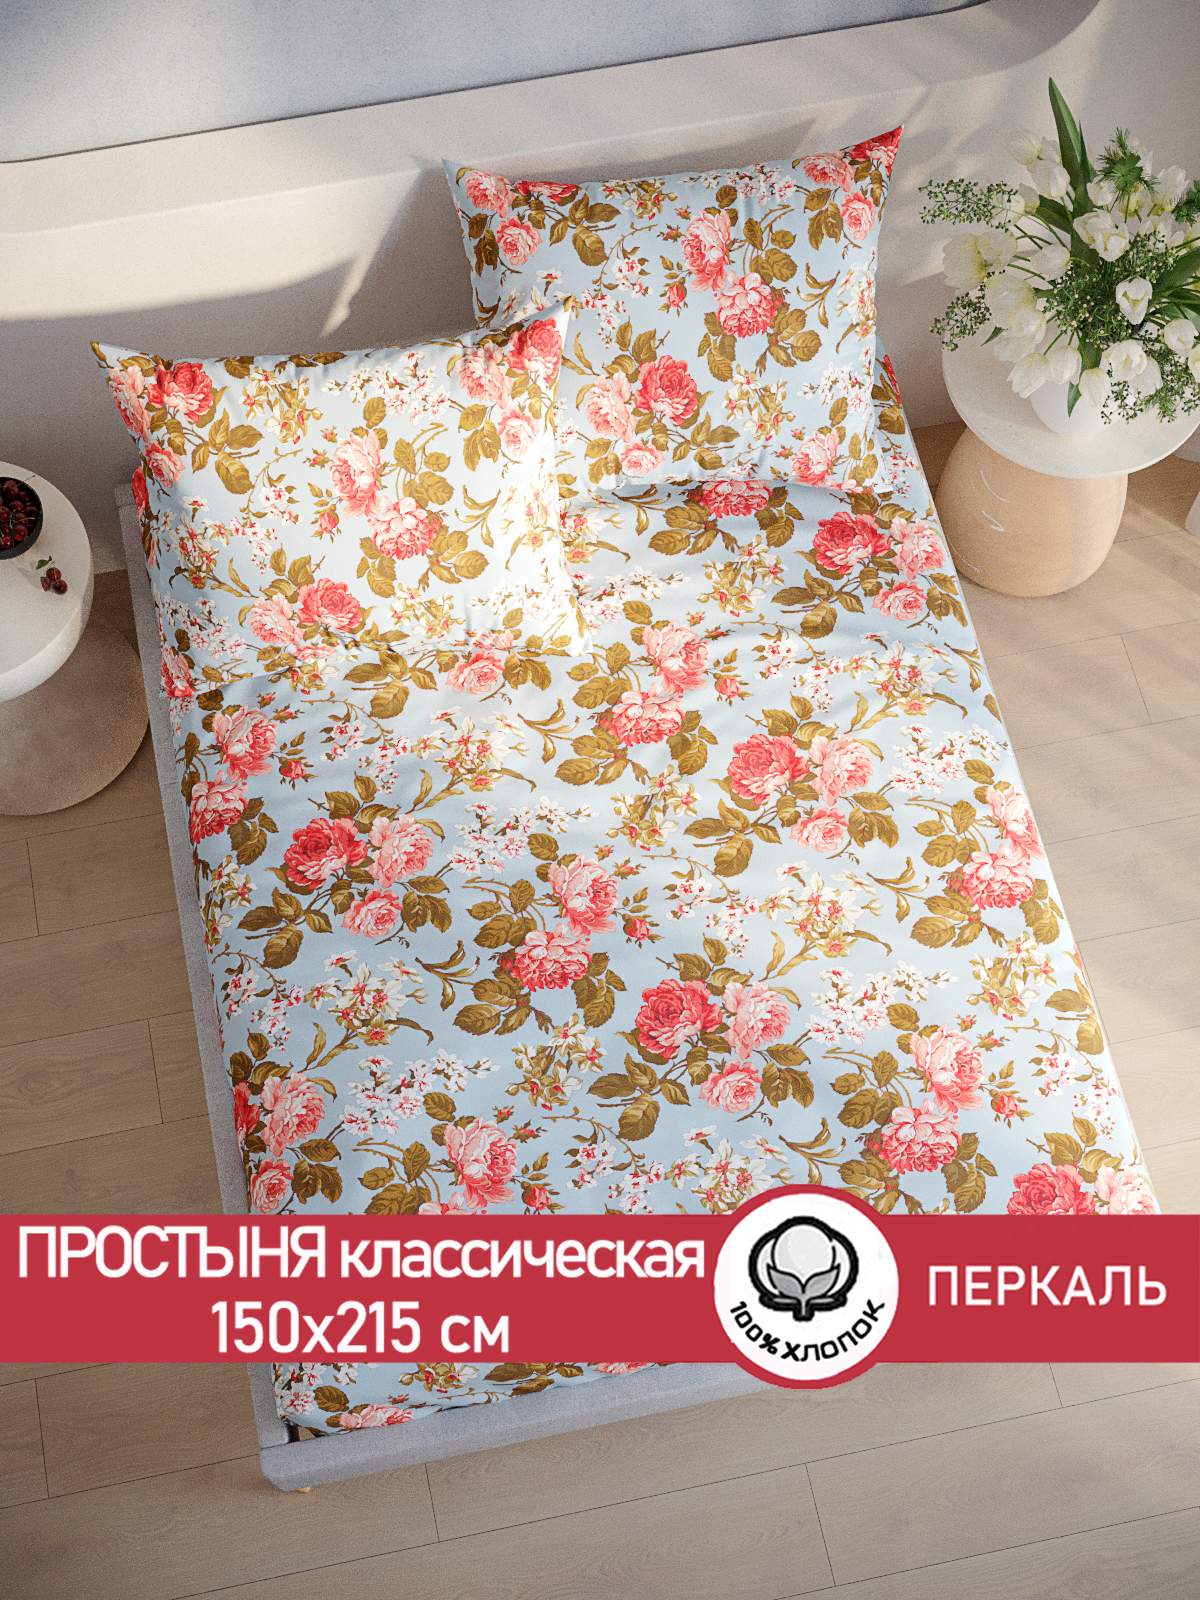 Простынь Сказка Прохоровская с мотивом розы, размер 150х215 см.